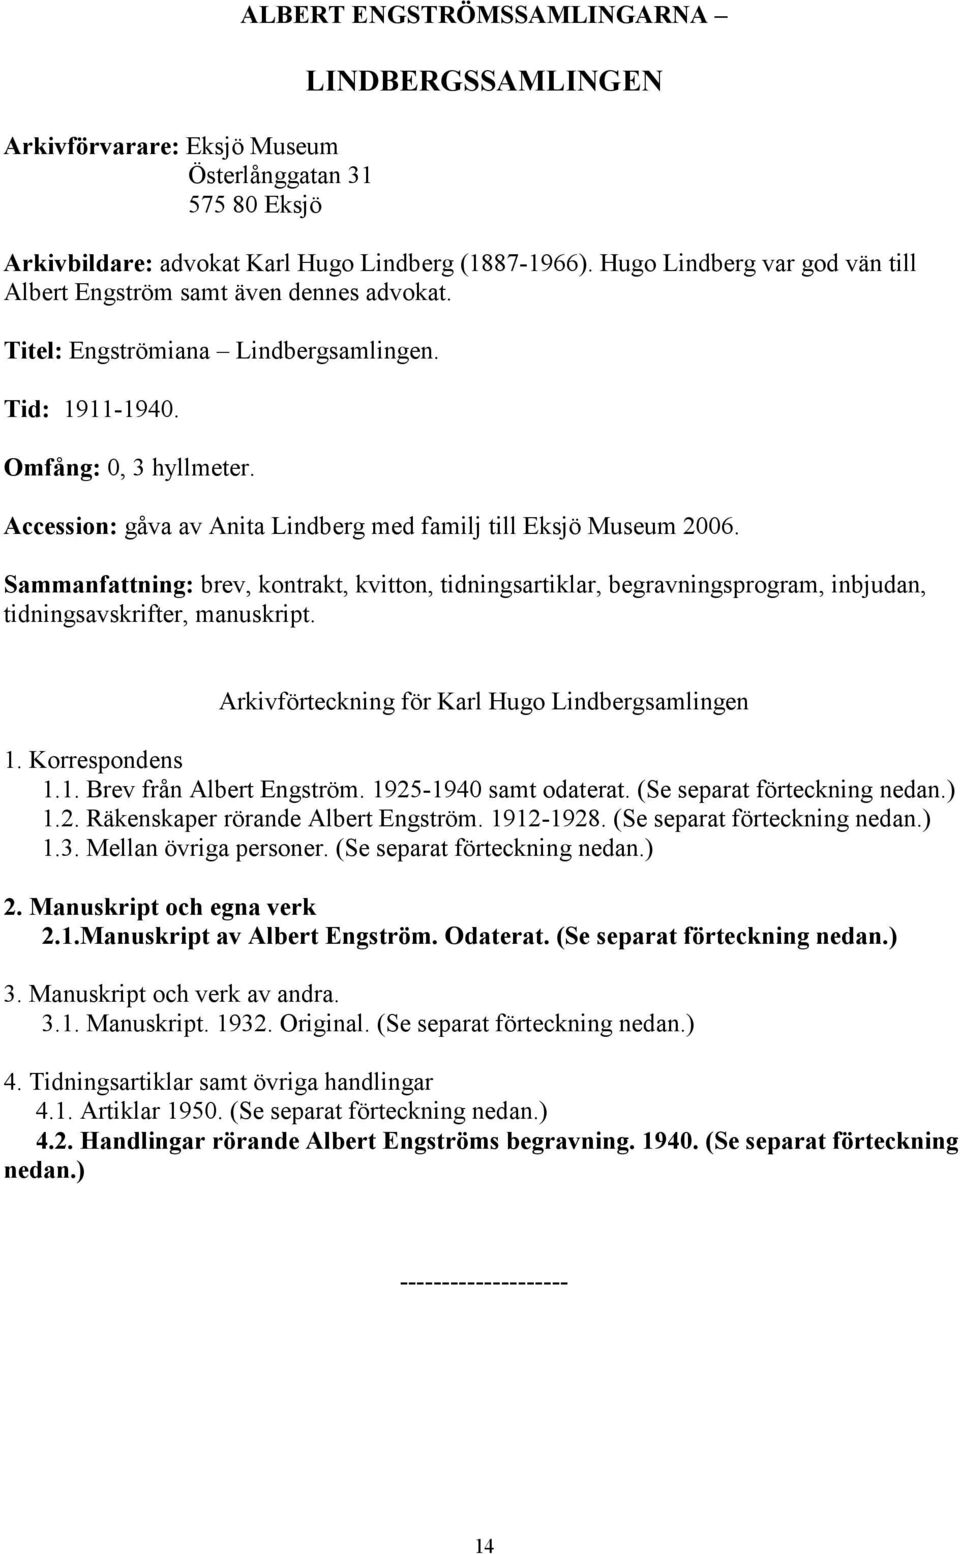 Accession: gåva av Anita Lindberg med familj till Eksjö Museum 2006. Sammanfattning: brev, kontrakt, kvitton, tidningsartiklar, begravningsprogram, inbjudan, tidningsavskrifter, manuskript.